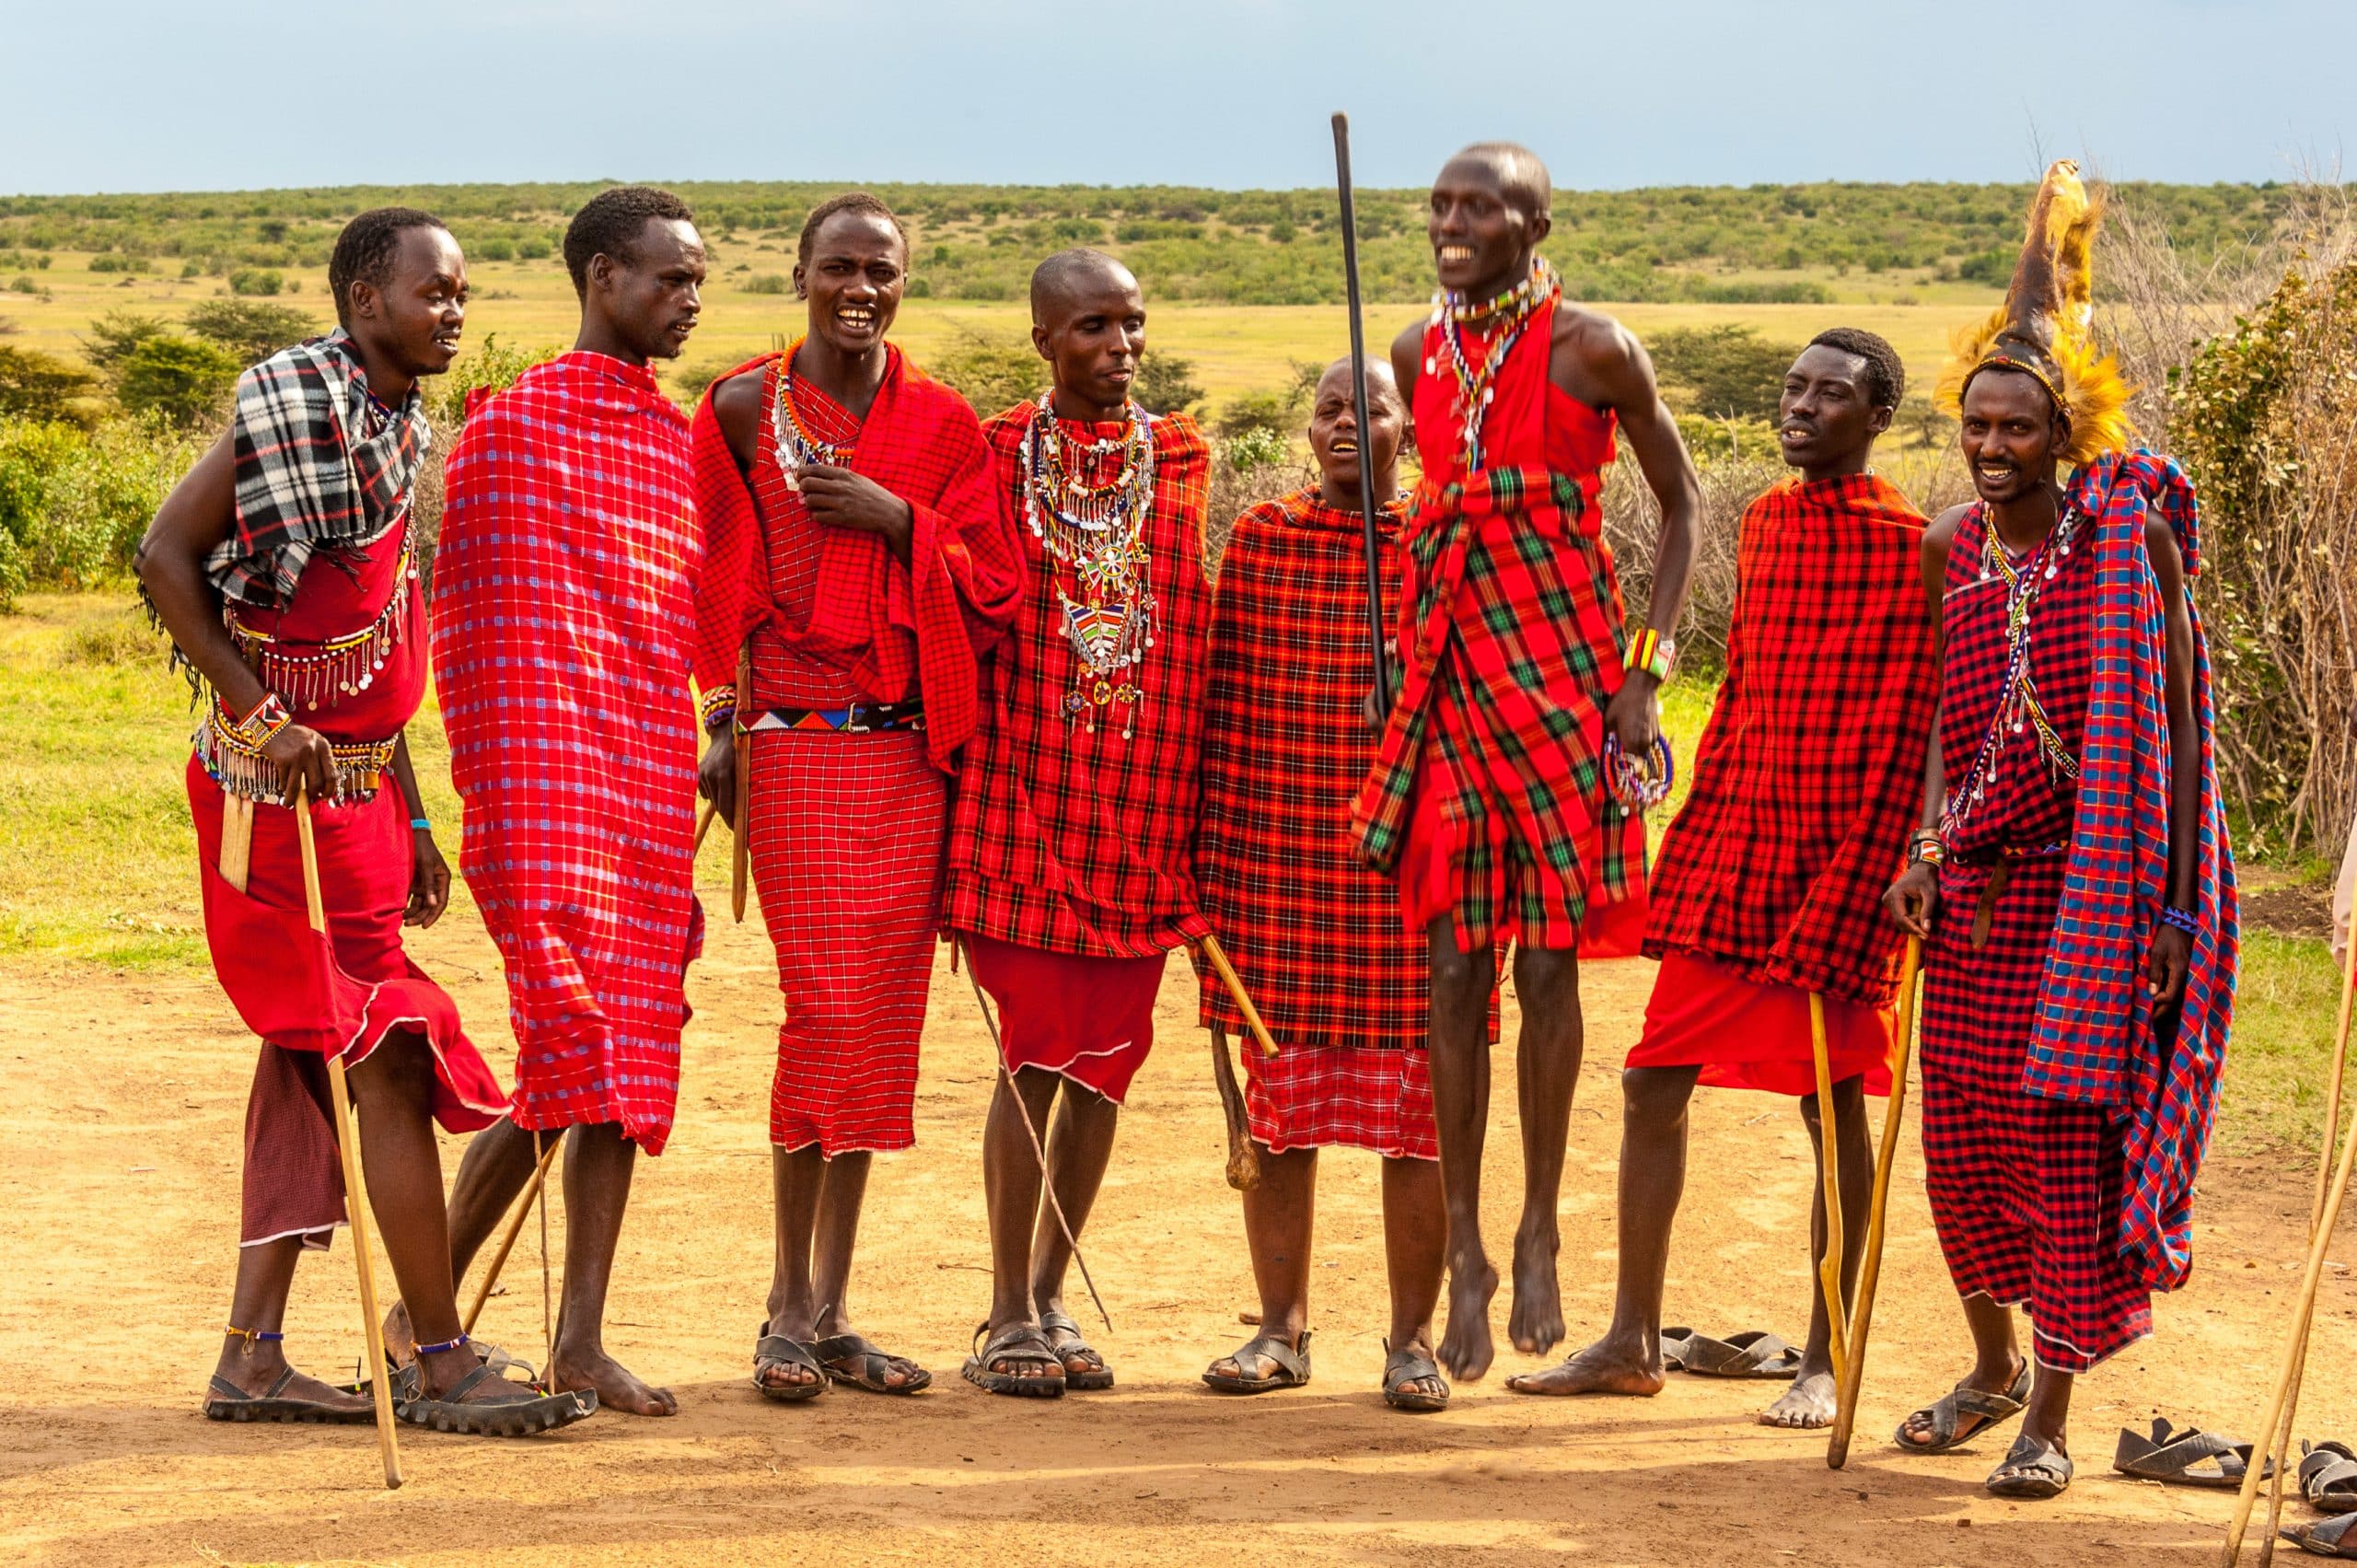 Maasai Tribe - Masai Mara Holidays